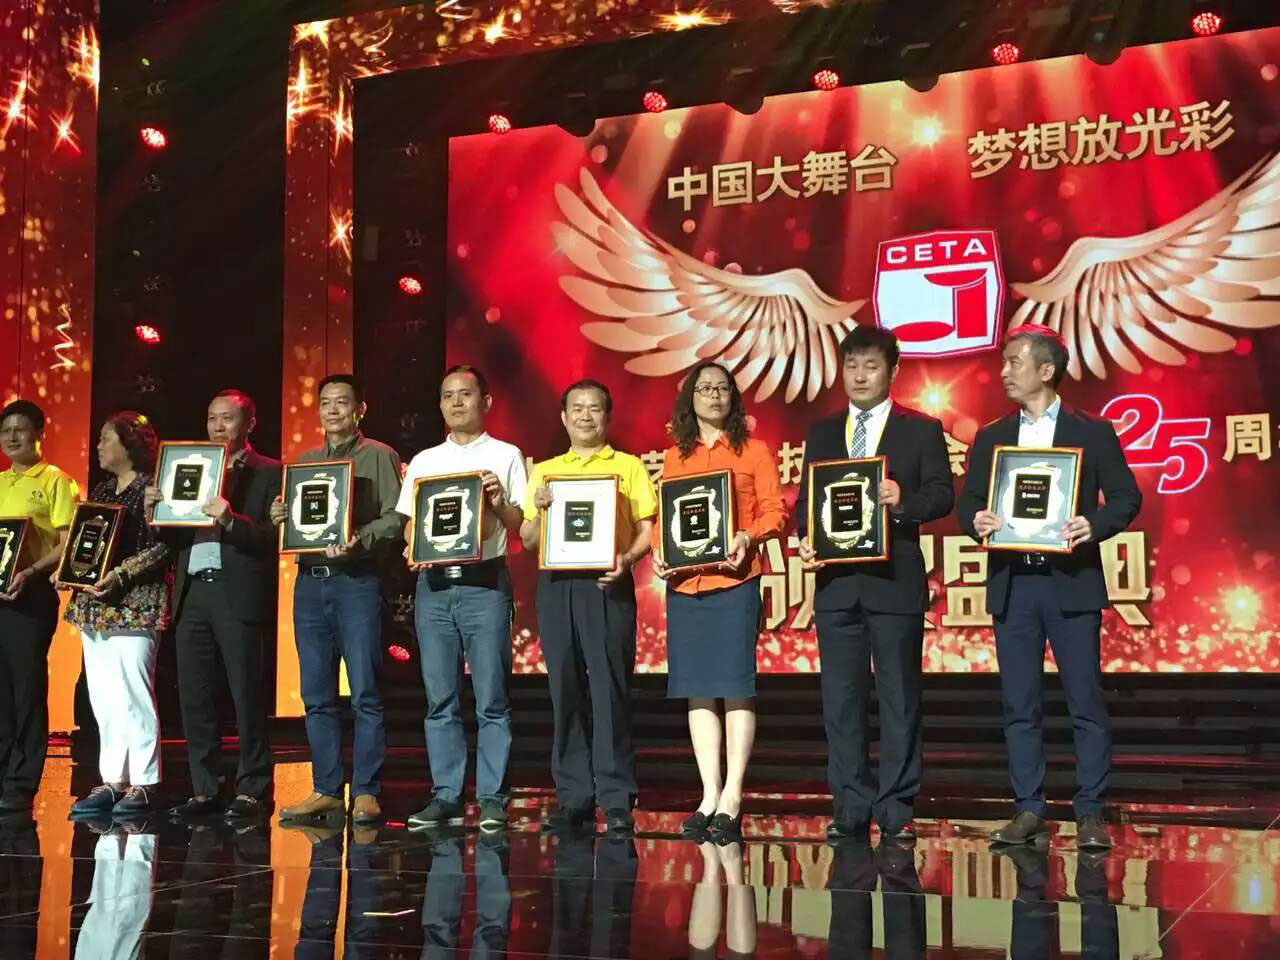 海天电子获得中国演艺设备行业“最具价值品牌”殊荣